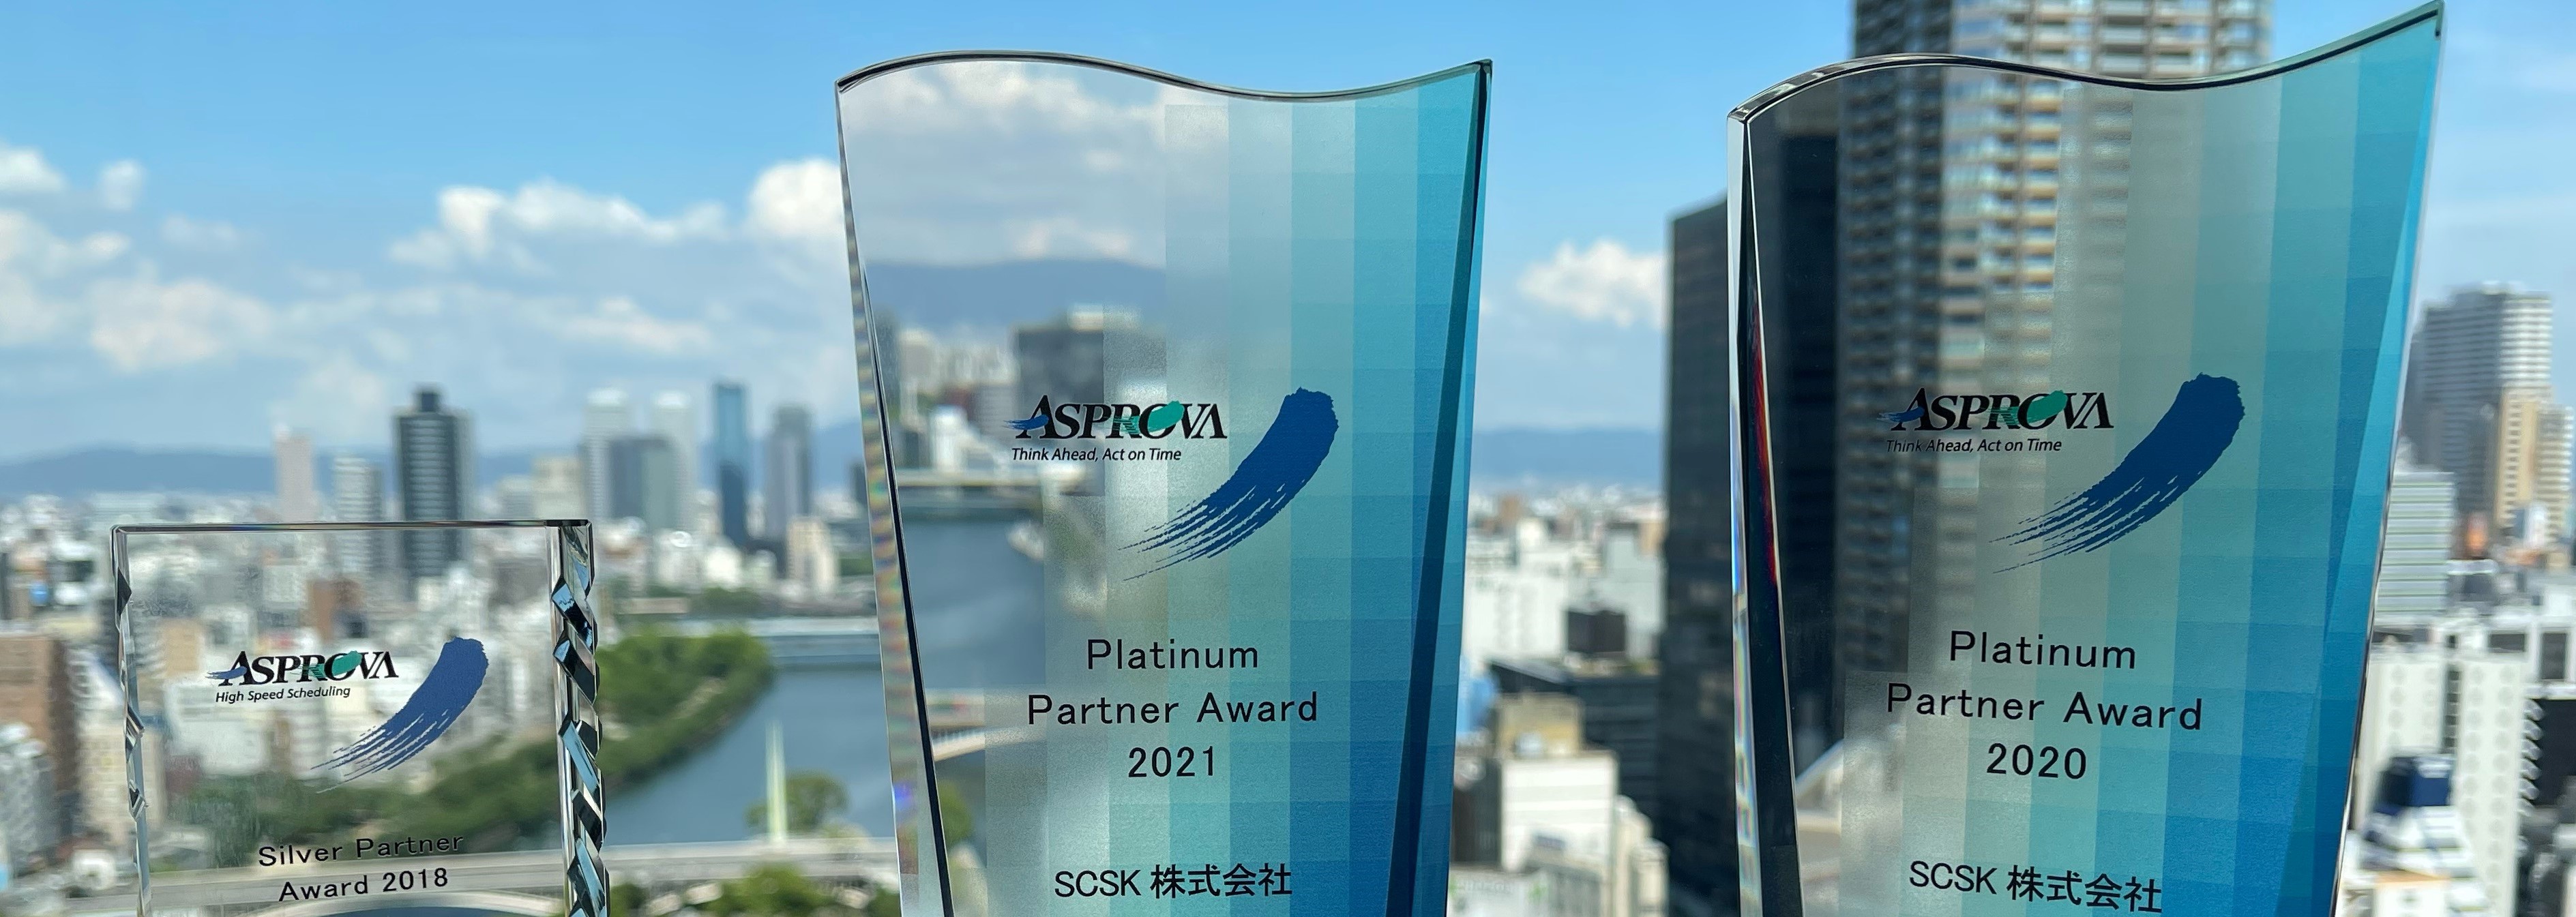 「Asprova Award」にて「Platinum Partner Award」を2年連続受賞